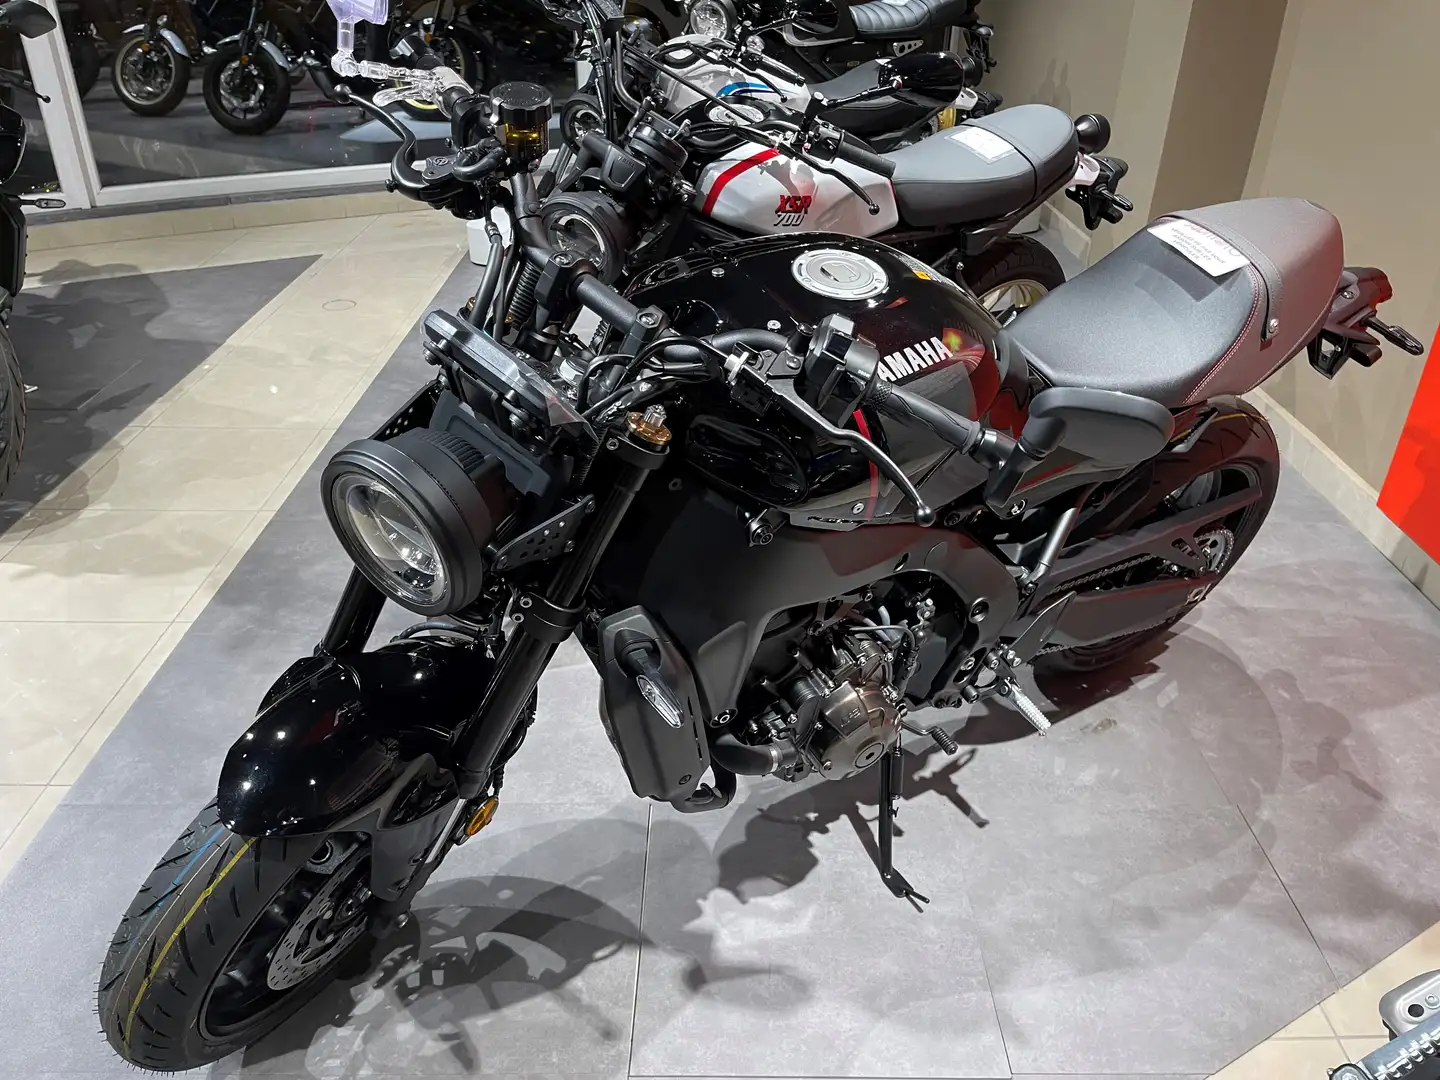 Yamaha XSR 900 Neuve - Disponible dans tous les coloris Noir - 2